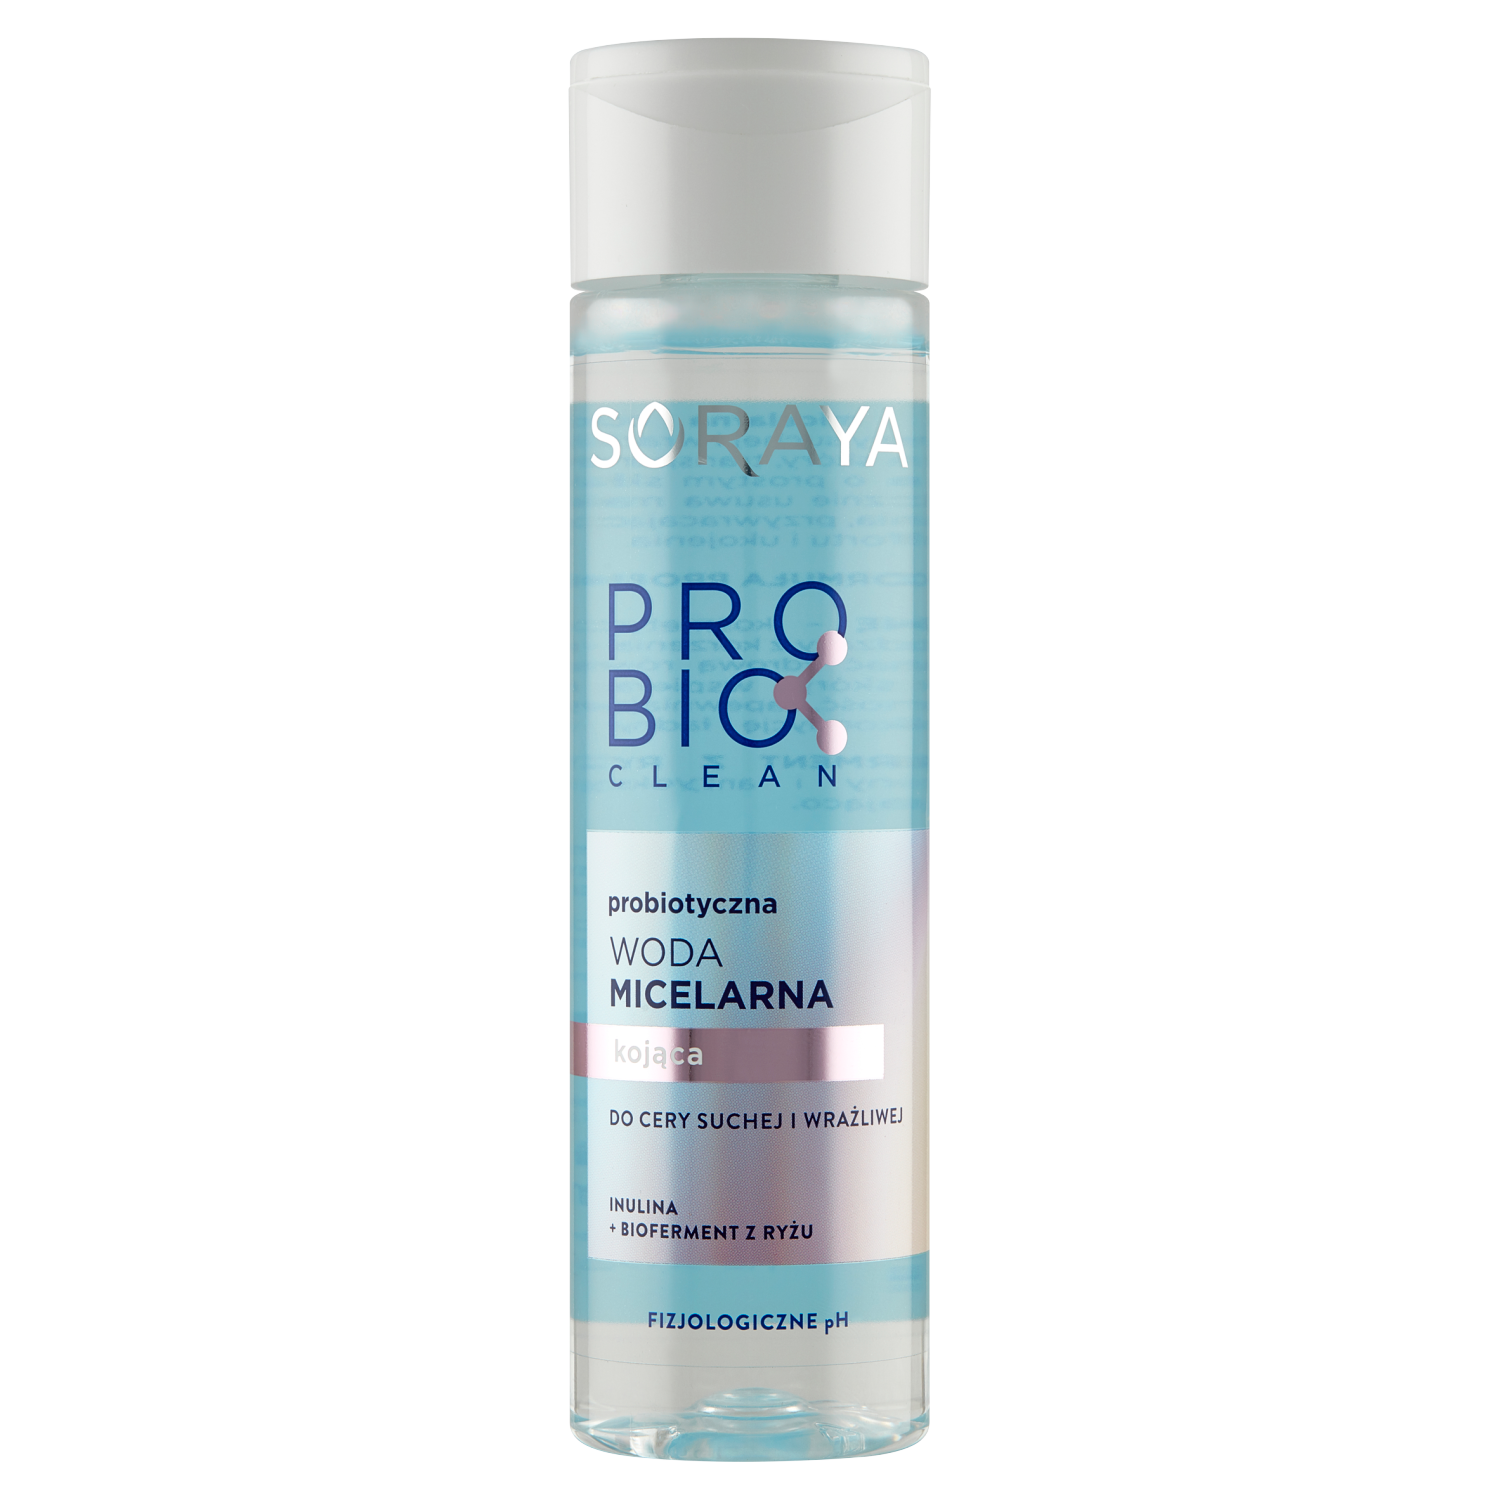 Soraya Probio Clean успокаивающая мицеллярная вода для лица, 250 мл